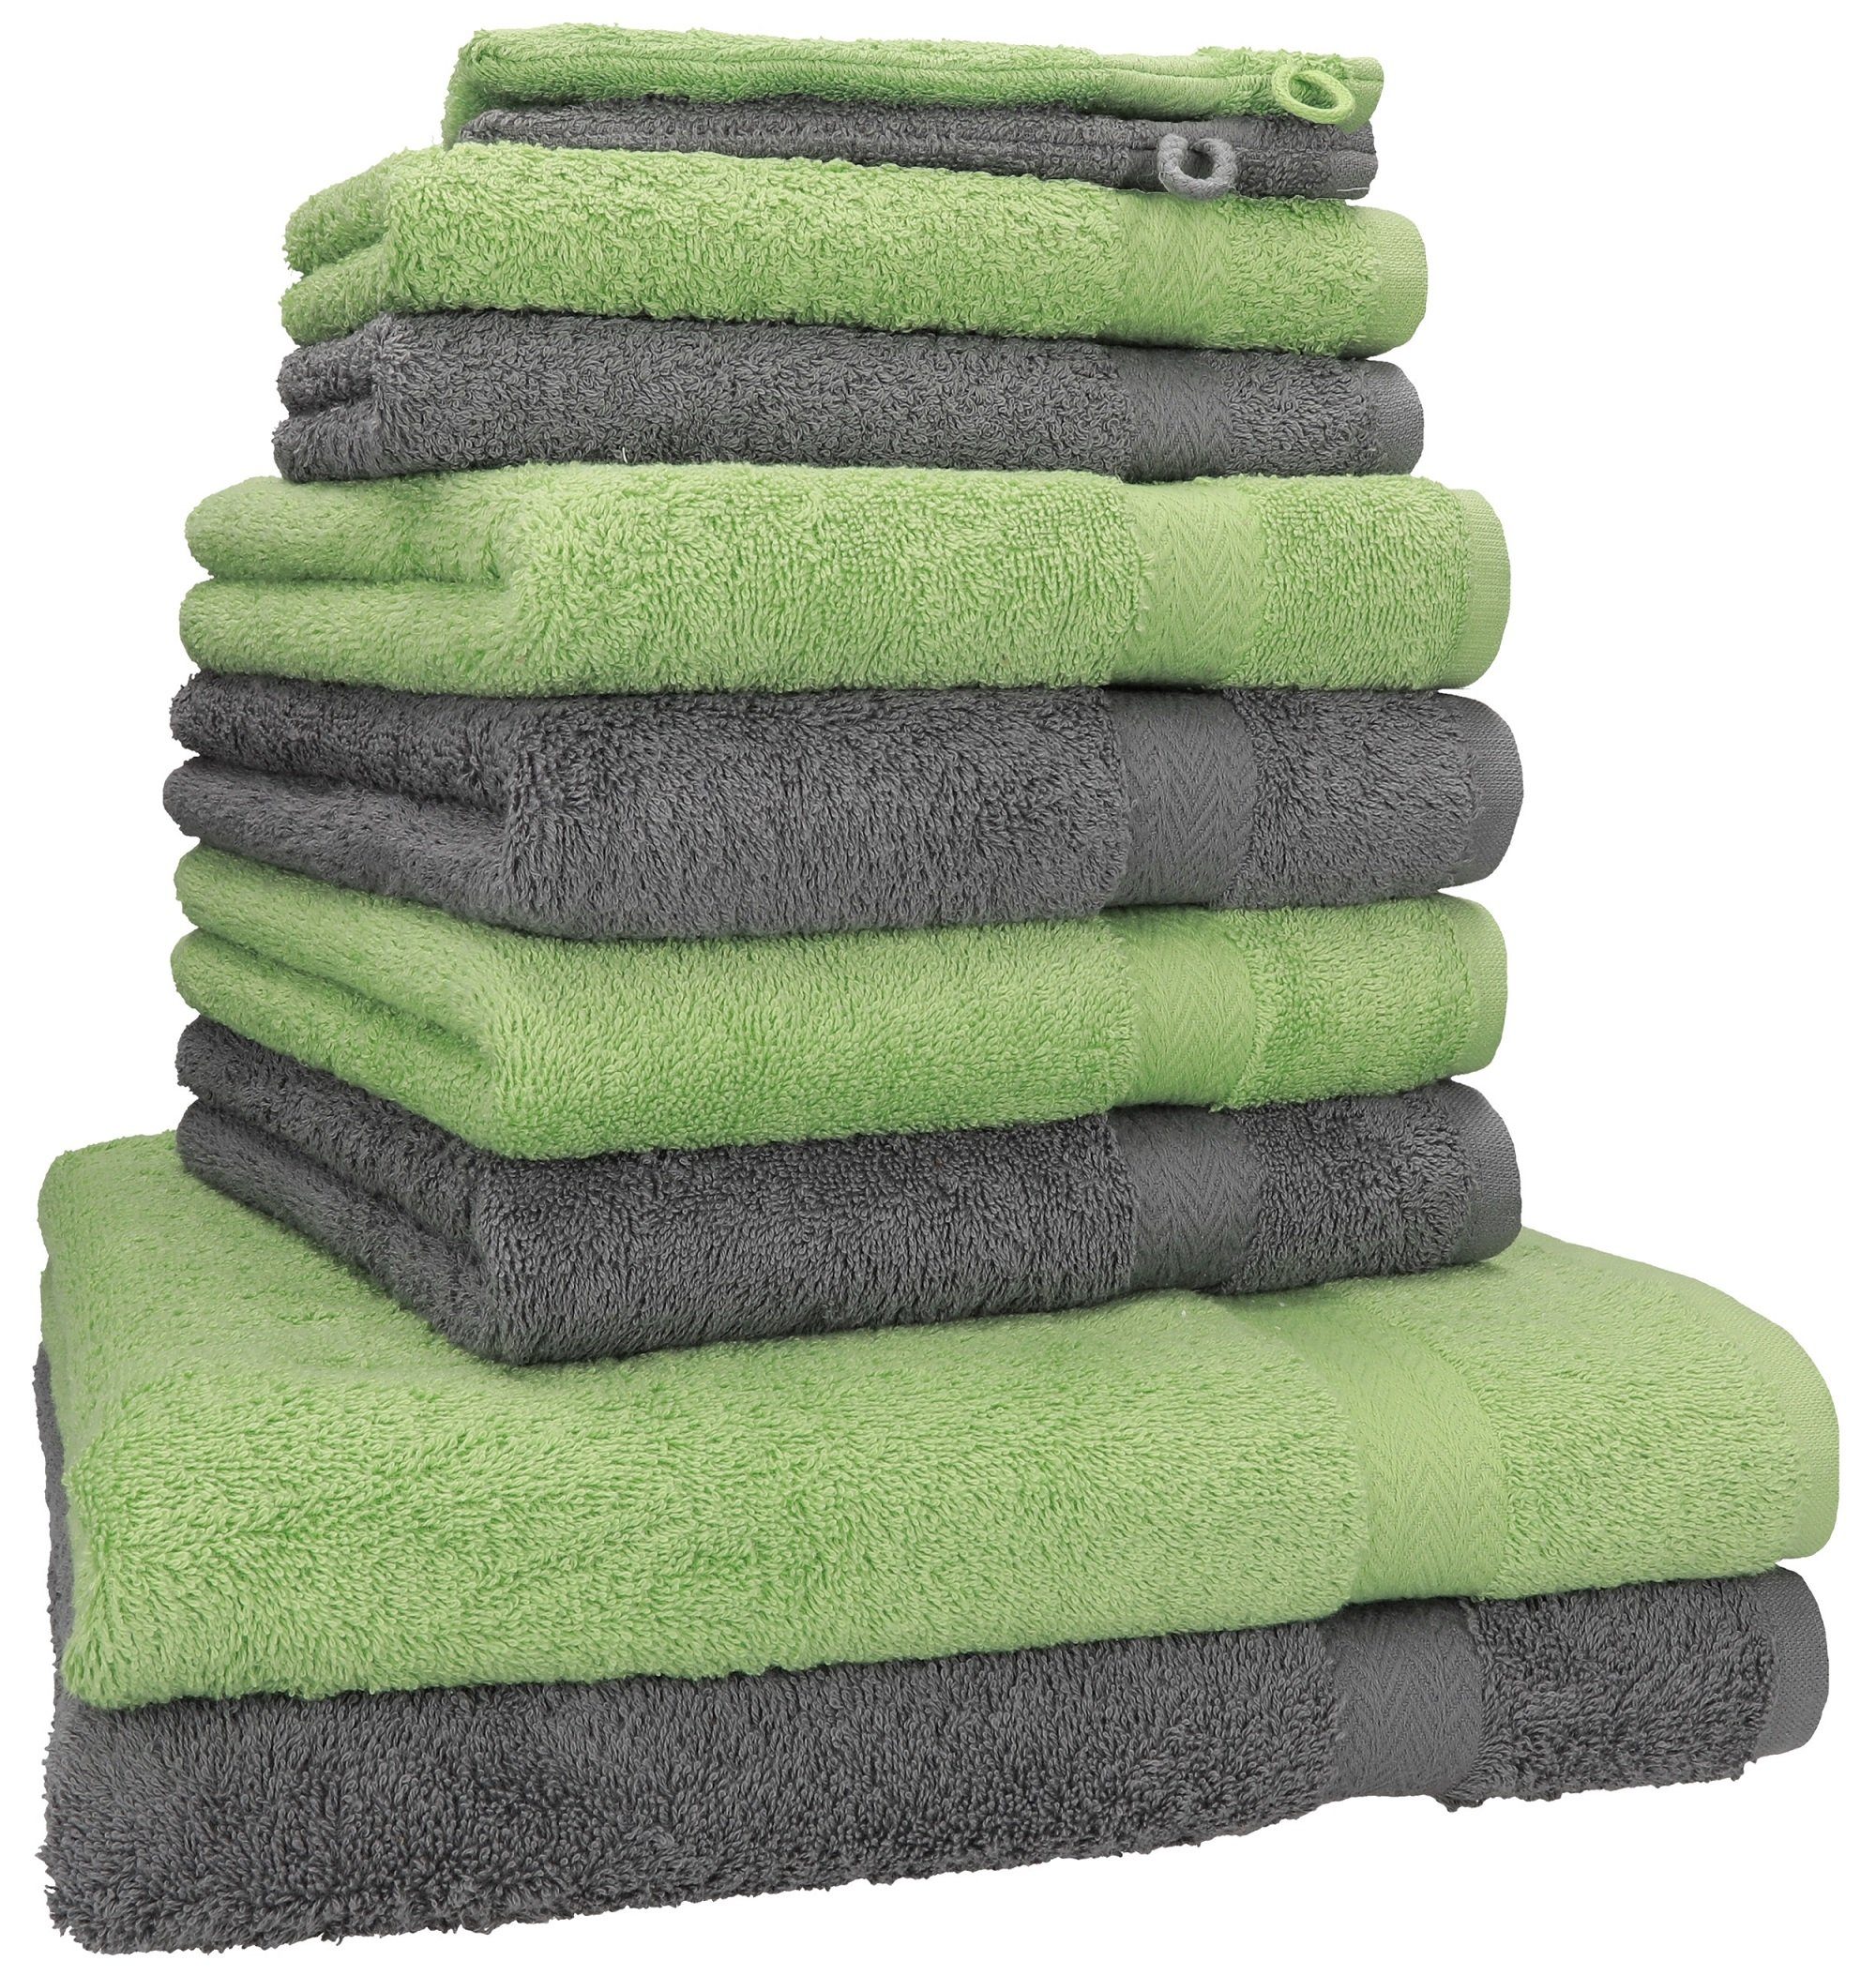 Betz Handtuch Set 10-tlg. Handtuch-Set Premium Farbe Anthrazit & Apfelgrün, 100% Baumwolle, (10-tlg)